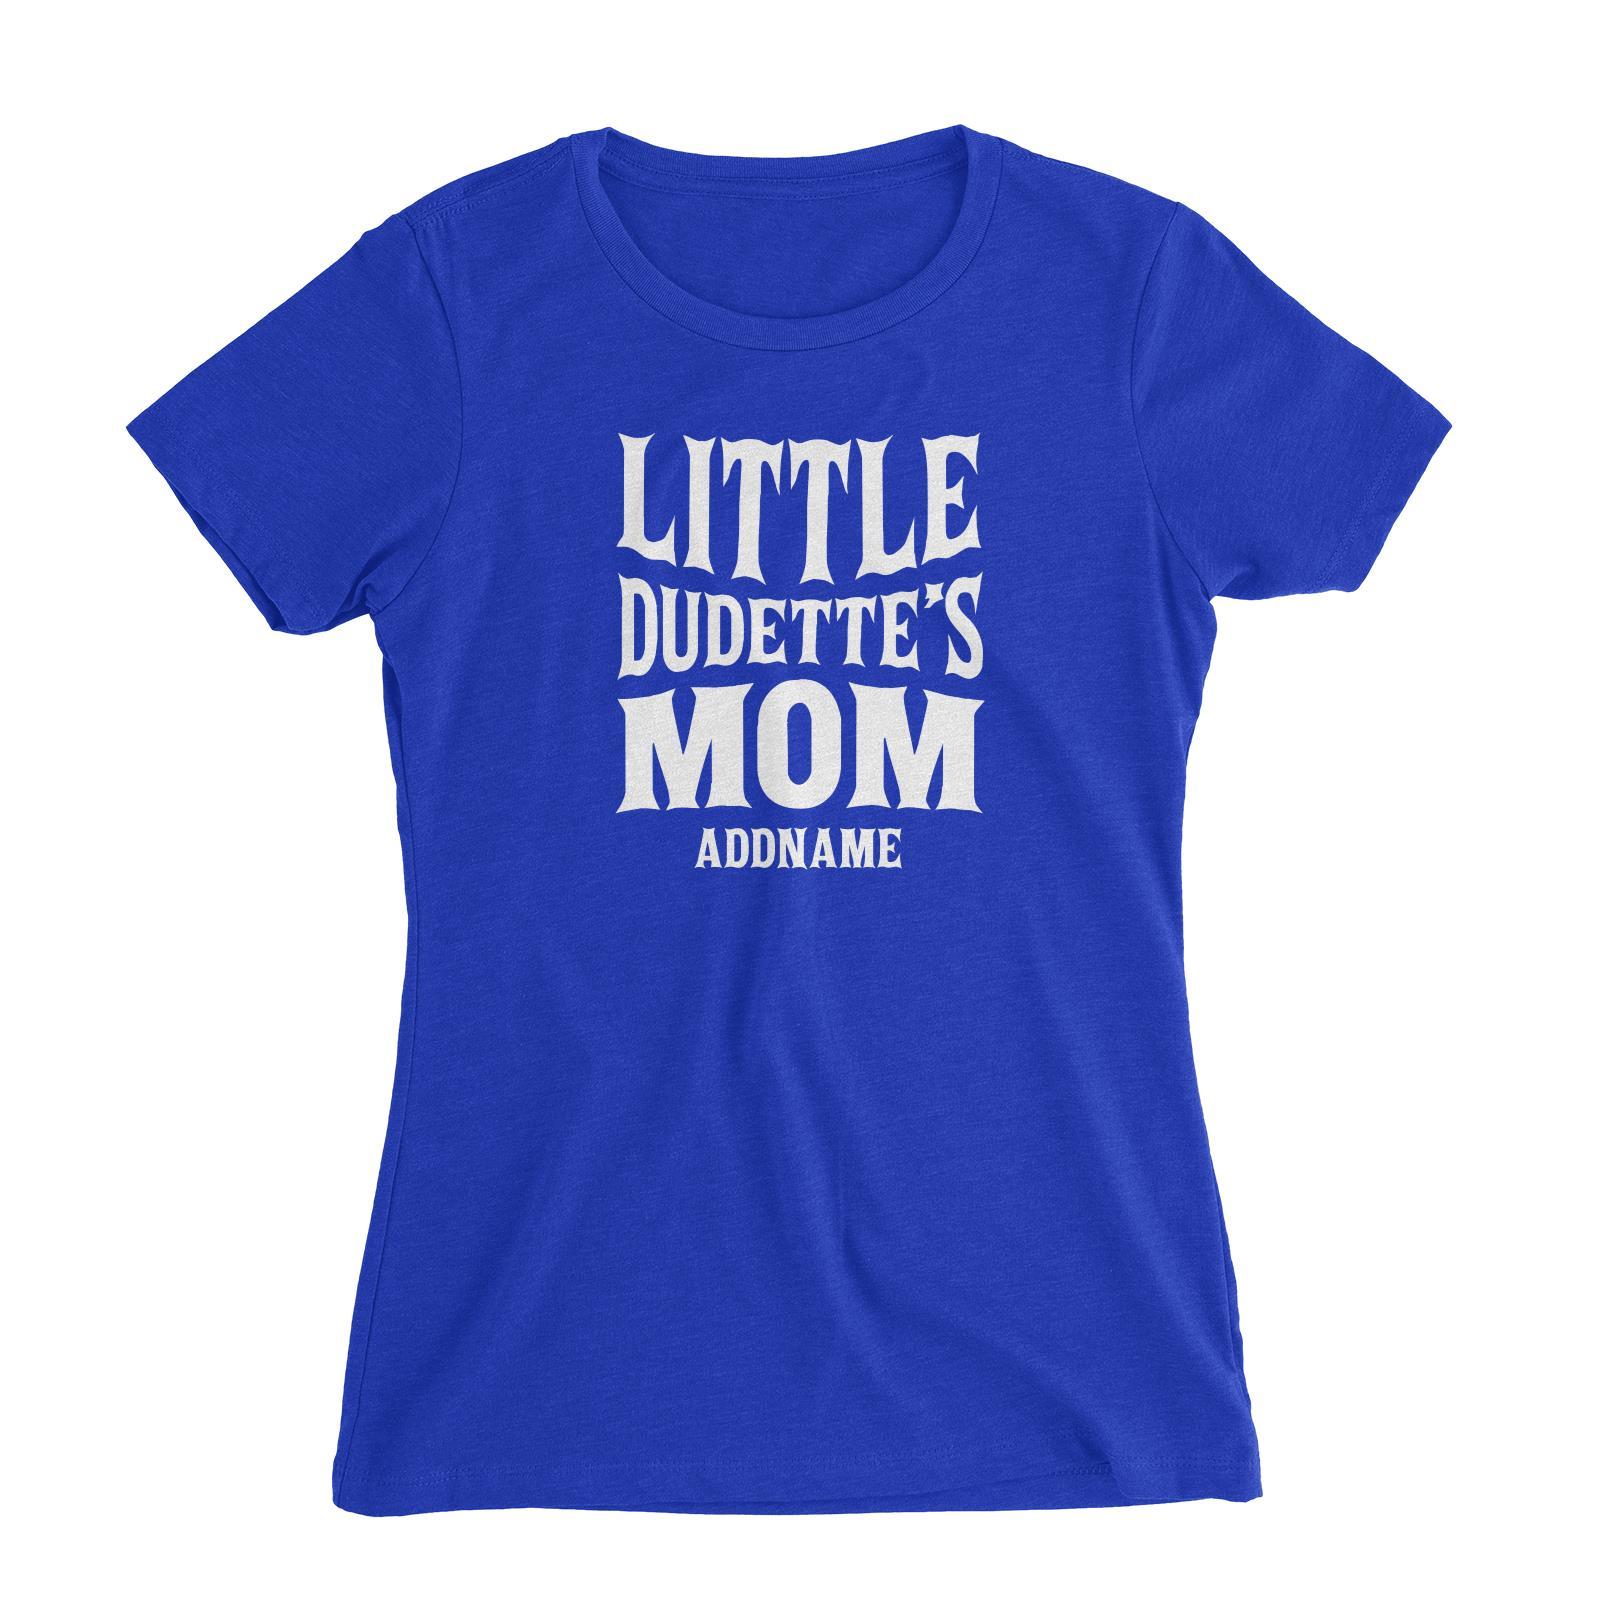 Little Dudettes Mom Women's Slim Fit T-Shirt